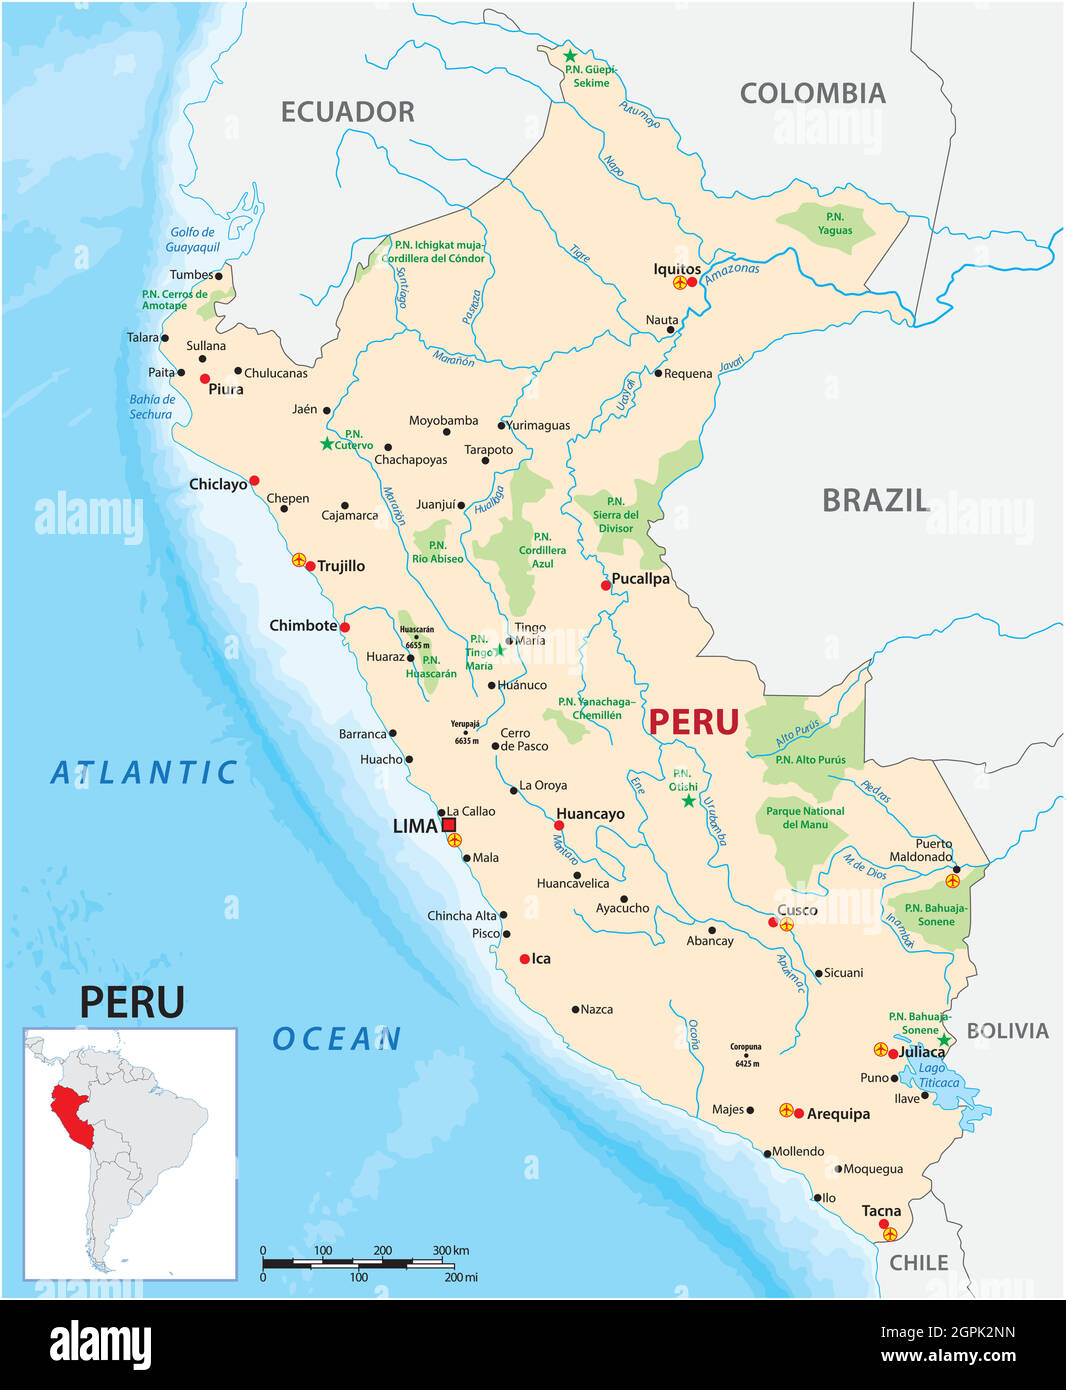 Mappa vettoriale dello stato sudamericano del Perù Illustrazione Vettoriale